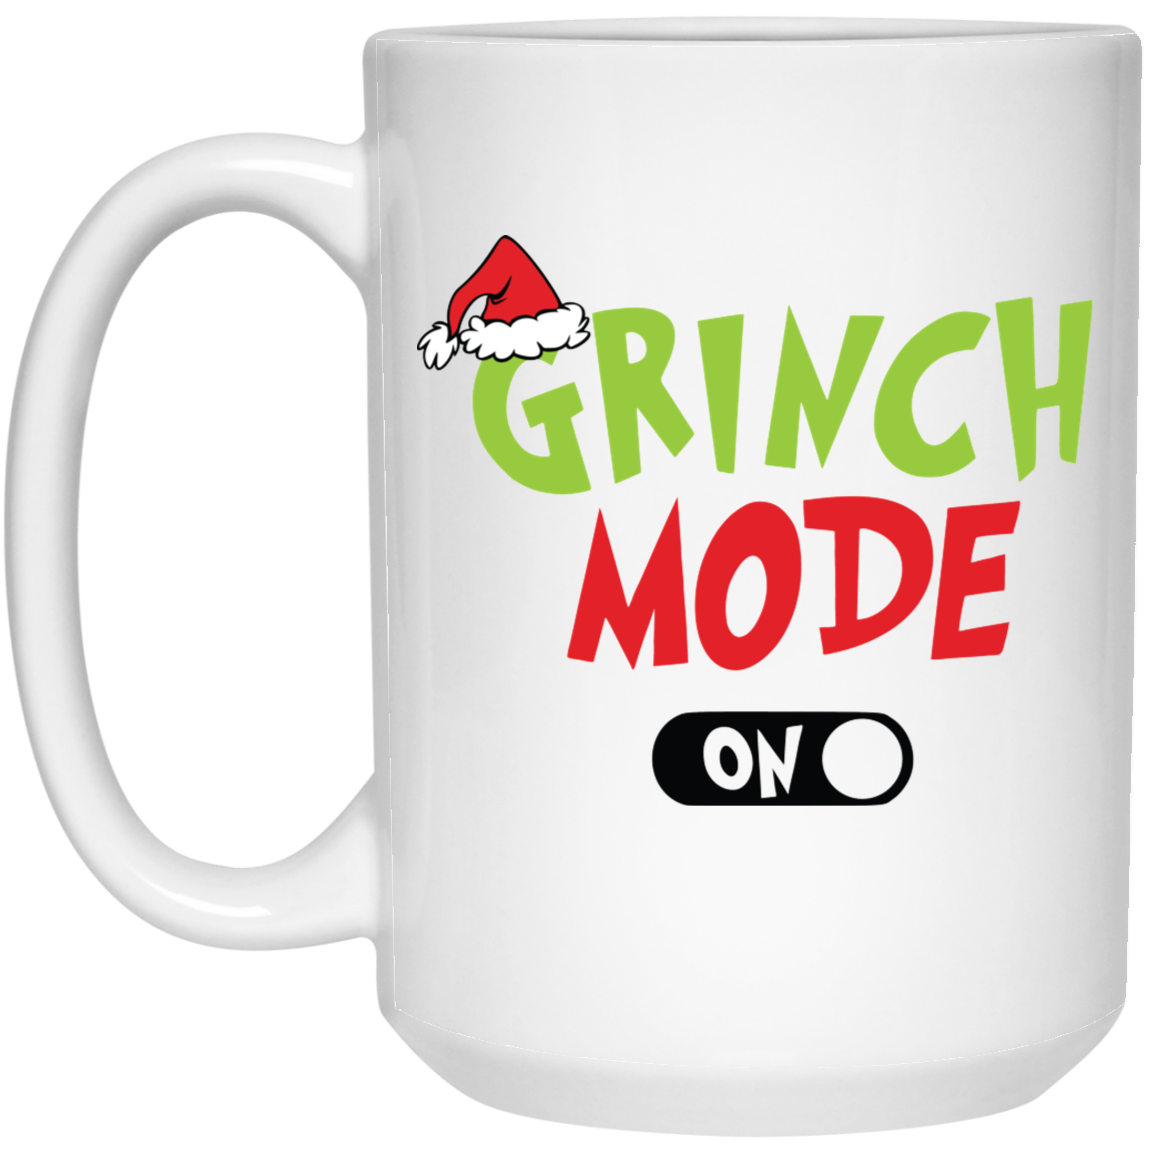 Jack Skellington and Grinch Coffee Mug Christmas gift